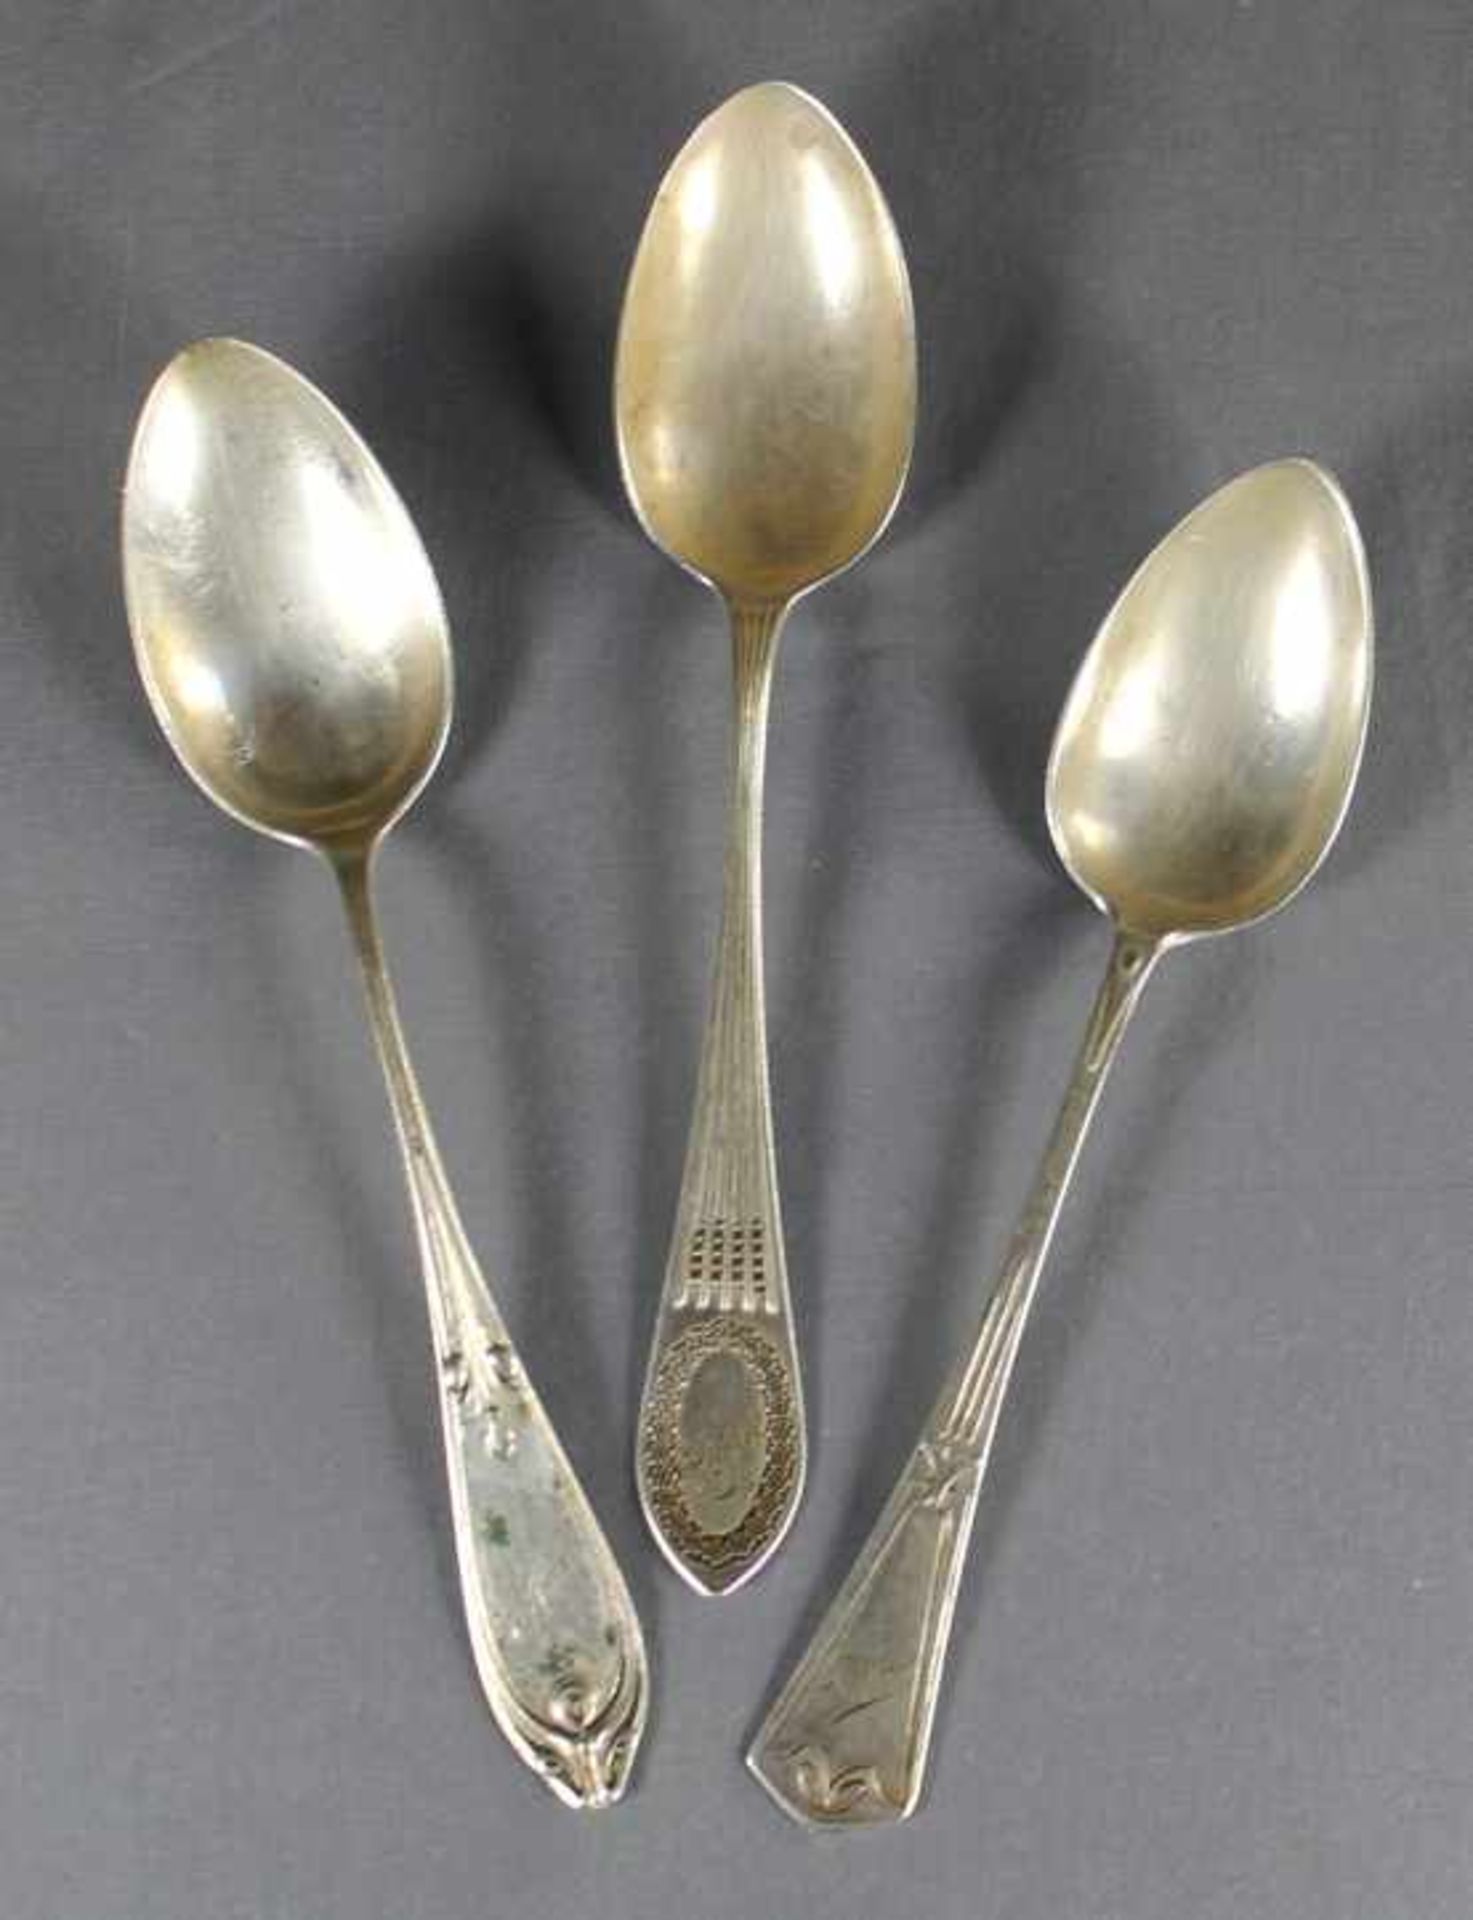 3 alte Suppenlöffel Silber (800/000), Punzen u.a. Halbmond und Krone, unterschiedlich gestaltete